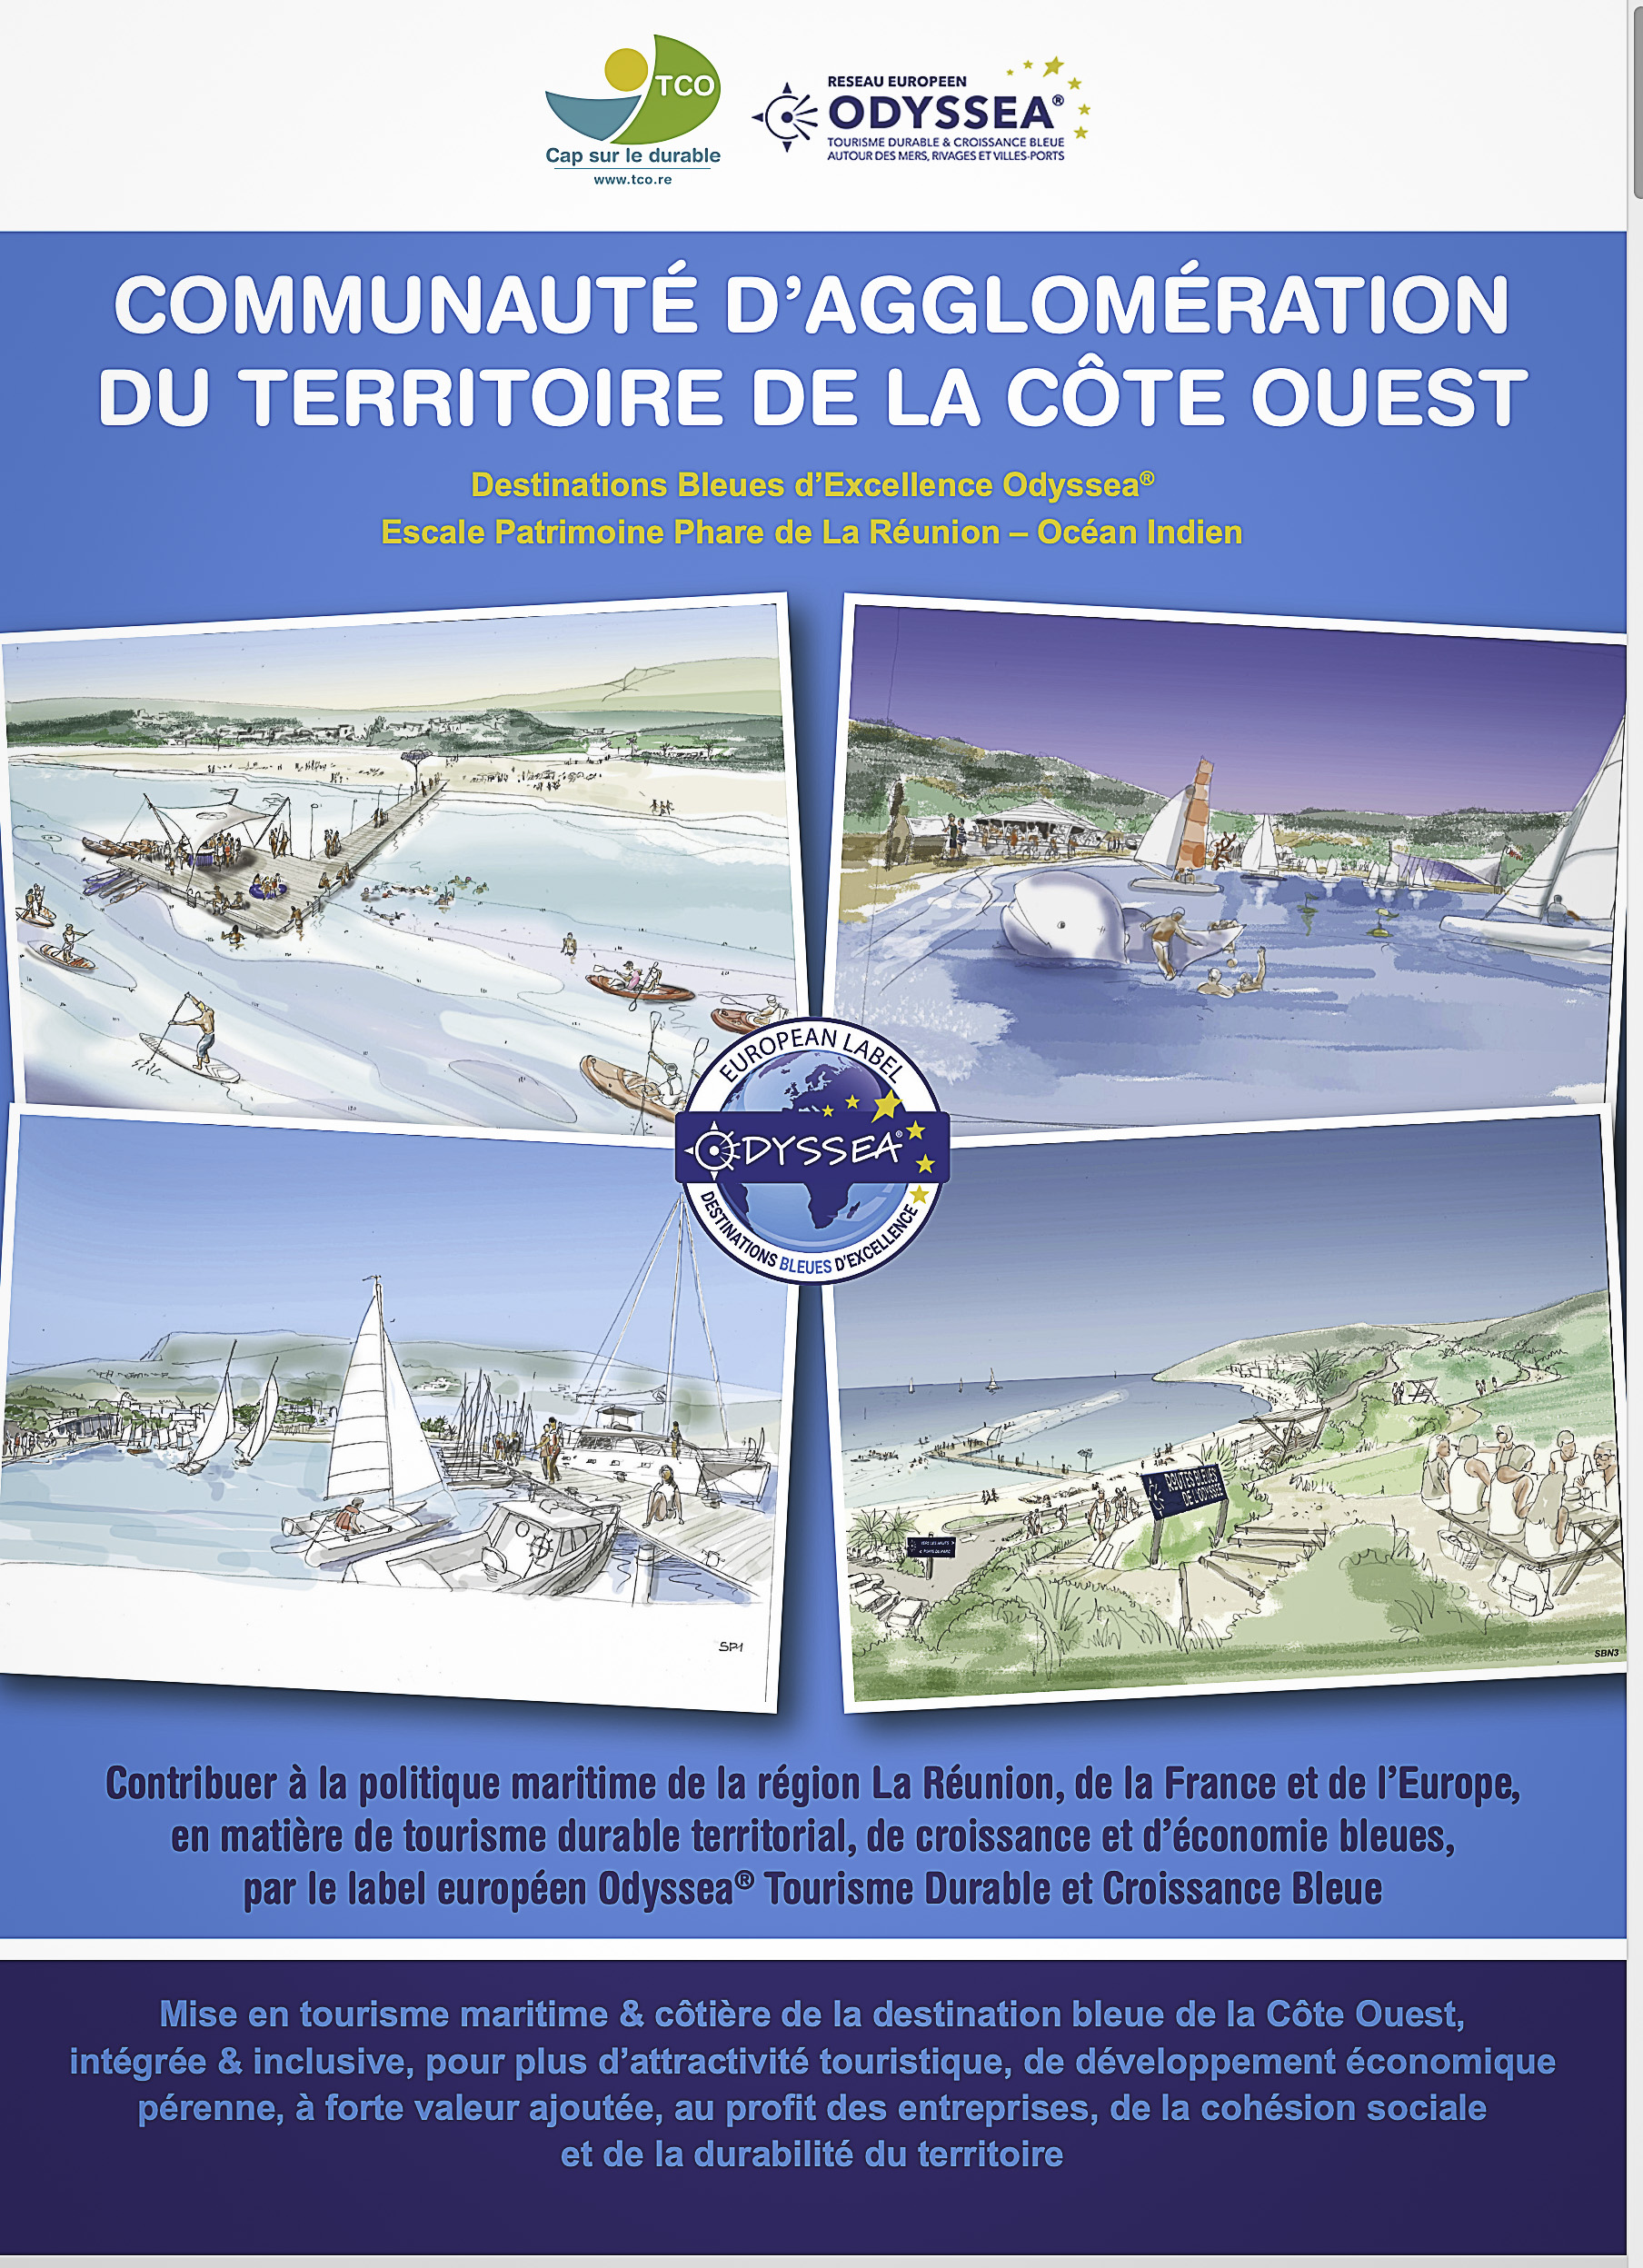 Le projet Odyssea® du Territoire de la Côte Ouest, cité dans le compte-rendu du Comité France Maritime